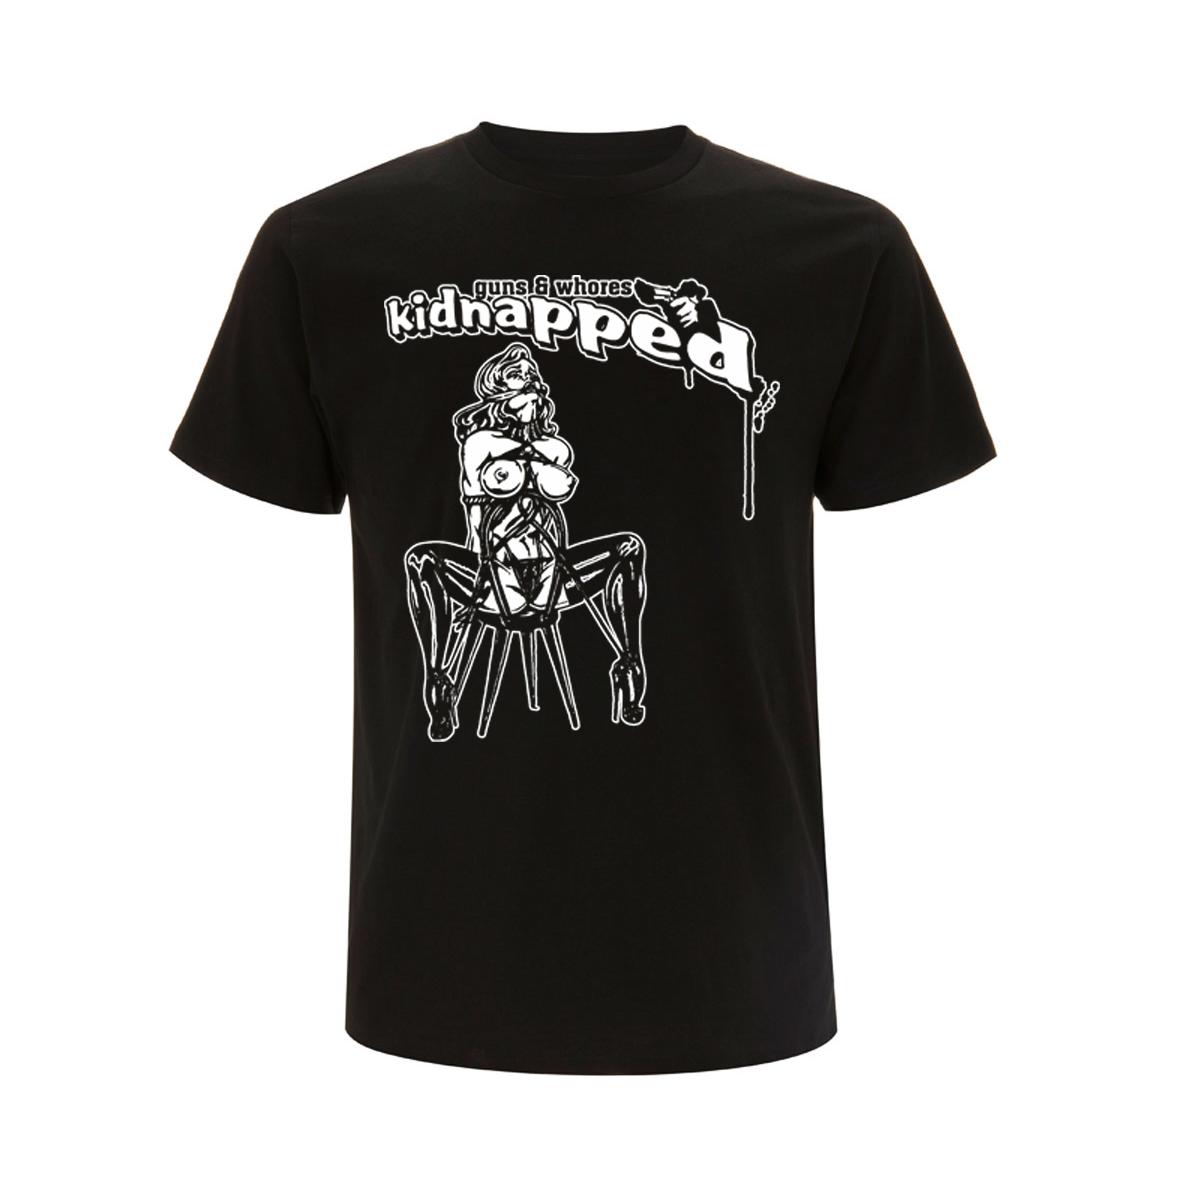 Kidnapped - Männer T-Shirt - schwarz